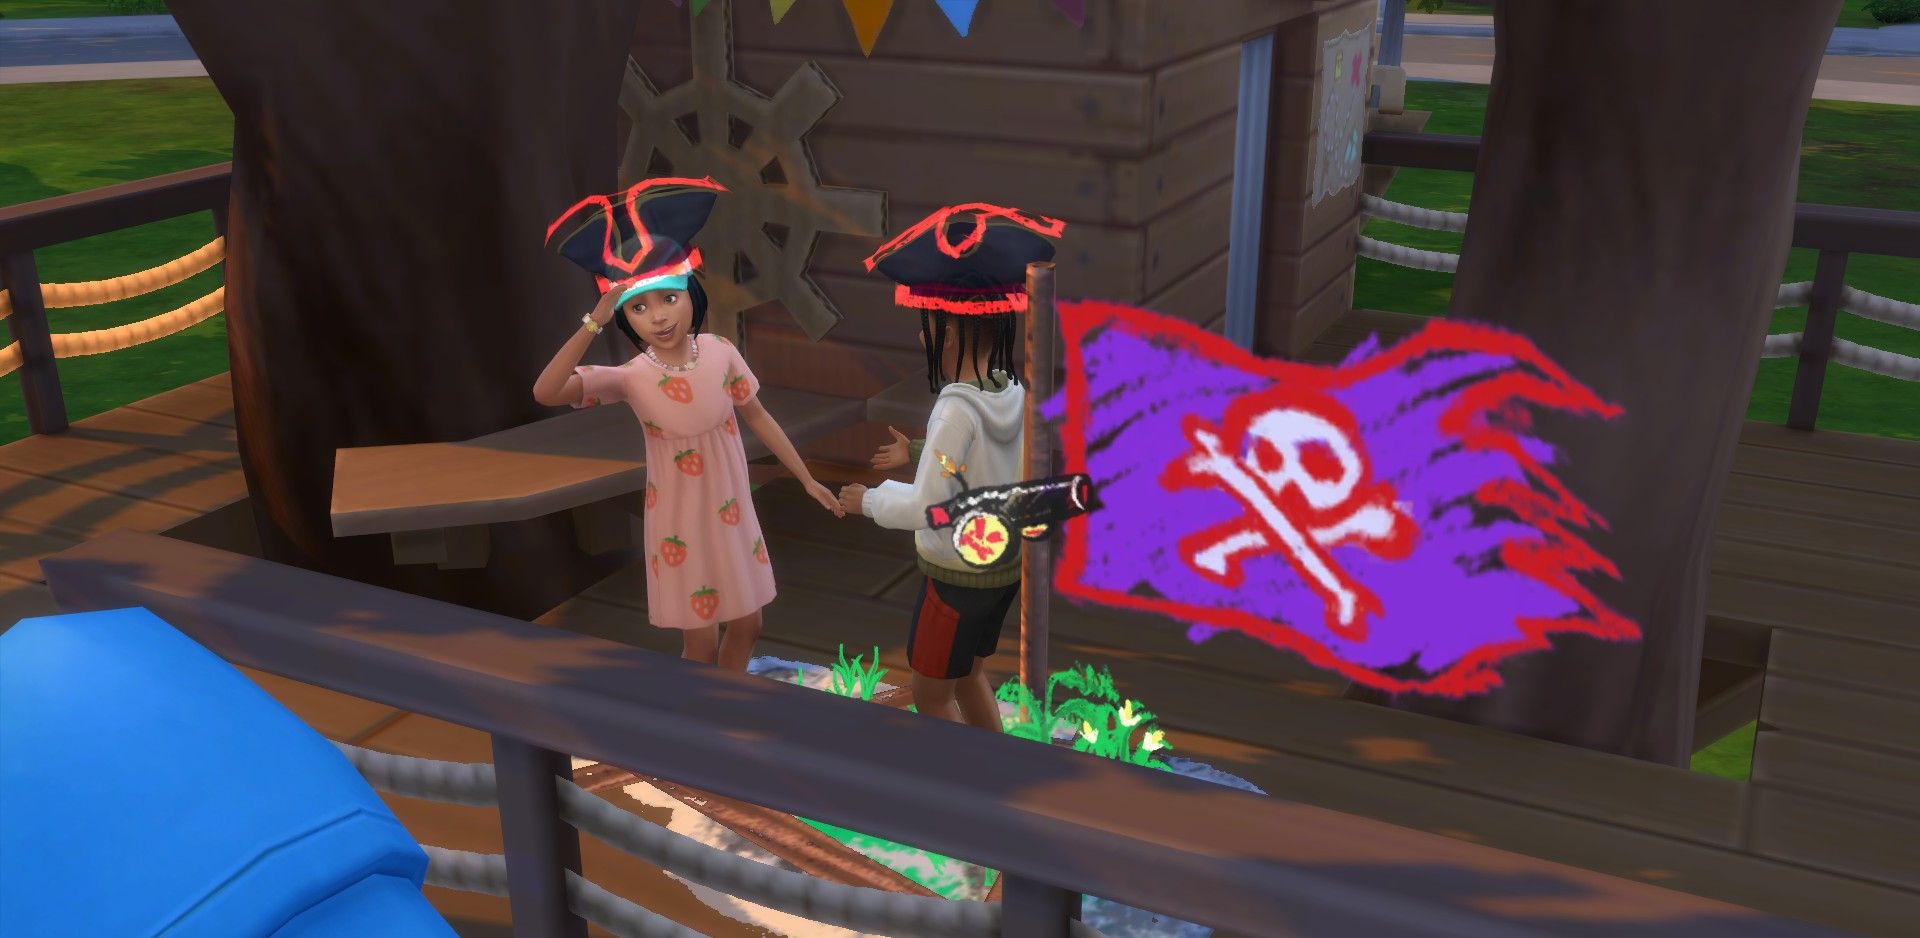 La casa del árbol de Sims 4 Growing Together donde dos niños juegan juntos a piratas imaginarios.